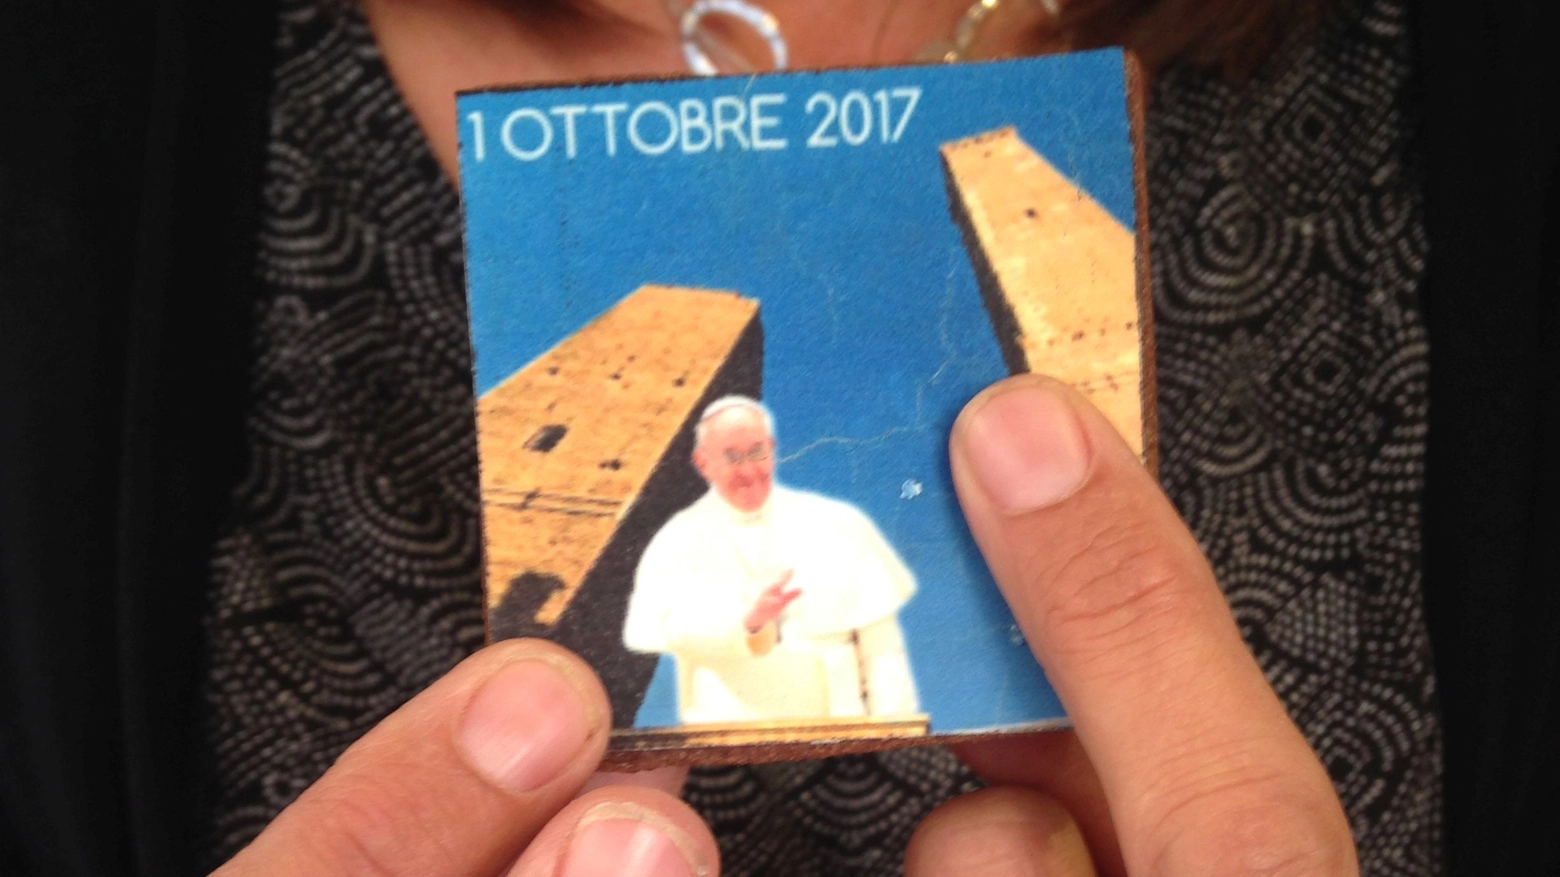 Biscotto-ricordo in occasione della visita di Papa Francesco 